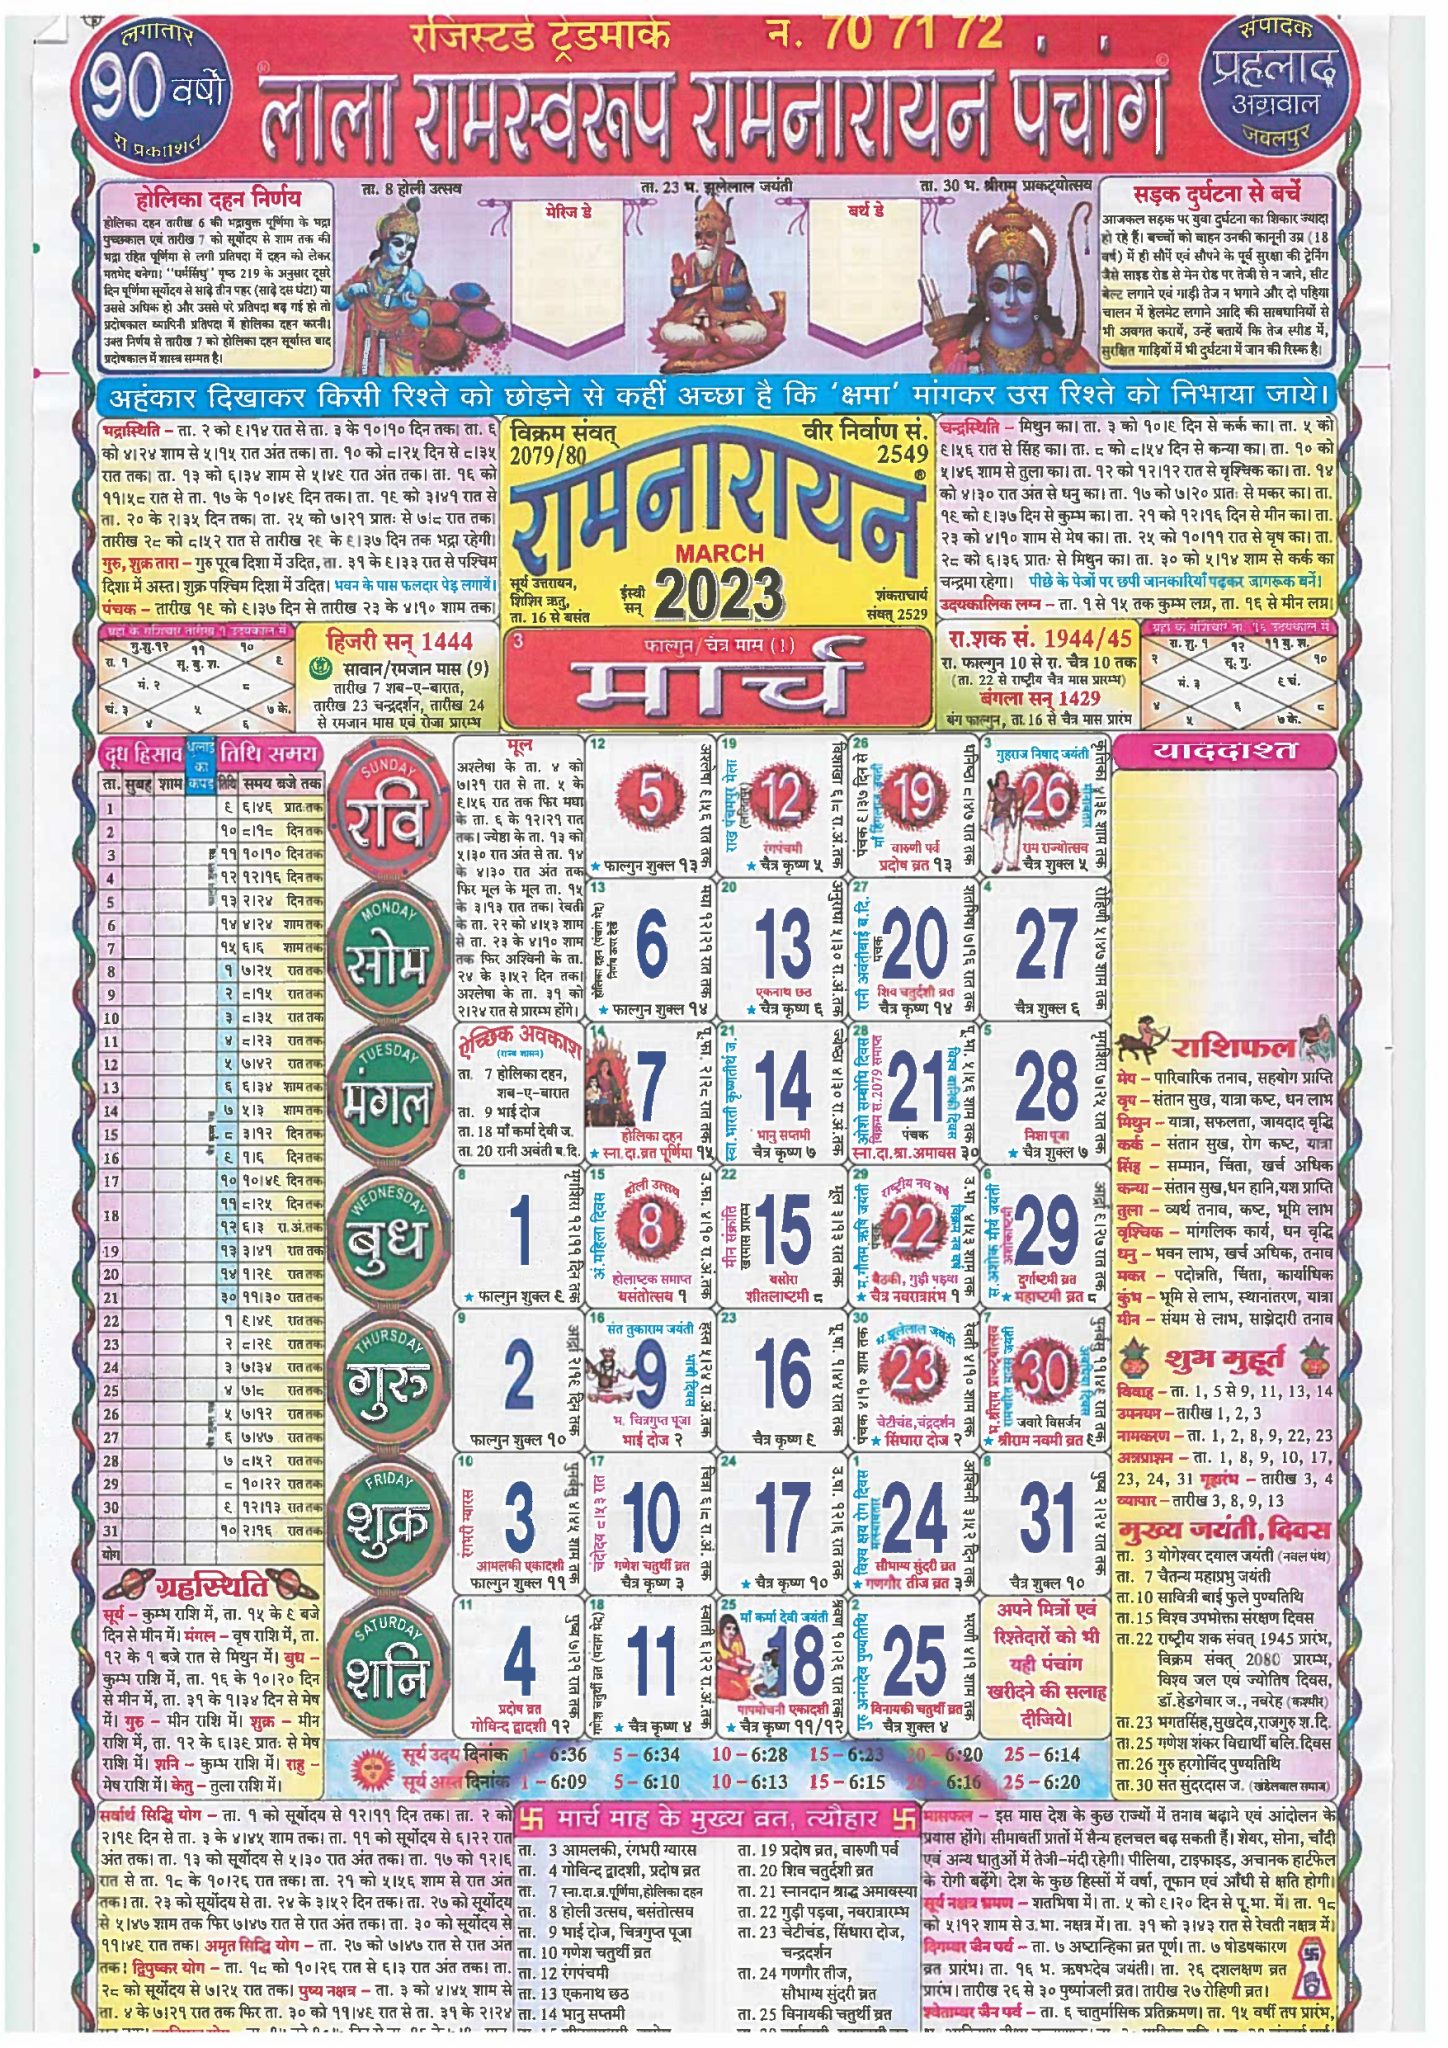 lala-ramswaroop-calendar-2023-pdf-download-2023-ganpati-sevak